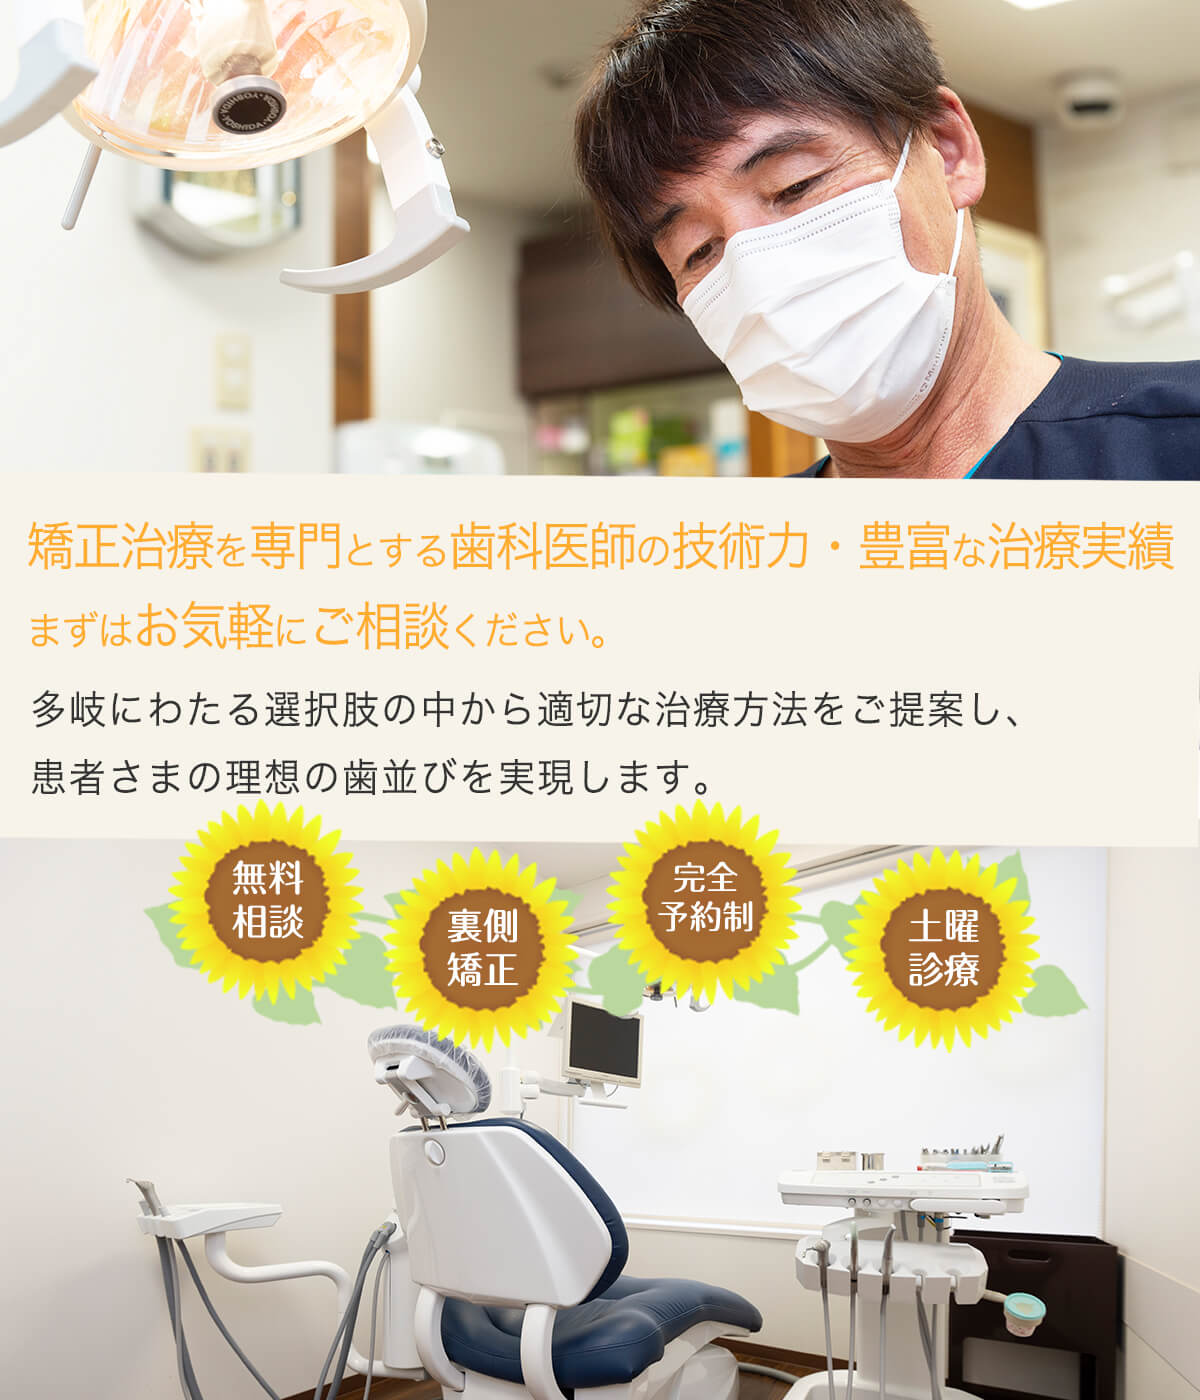 栃木県(小山市・下野市）の矯正歯科・歯の矯正なら「ひまわり矯正歯科」